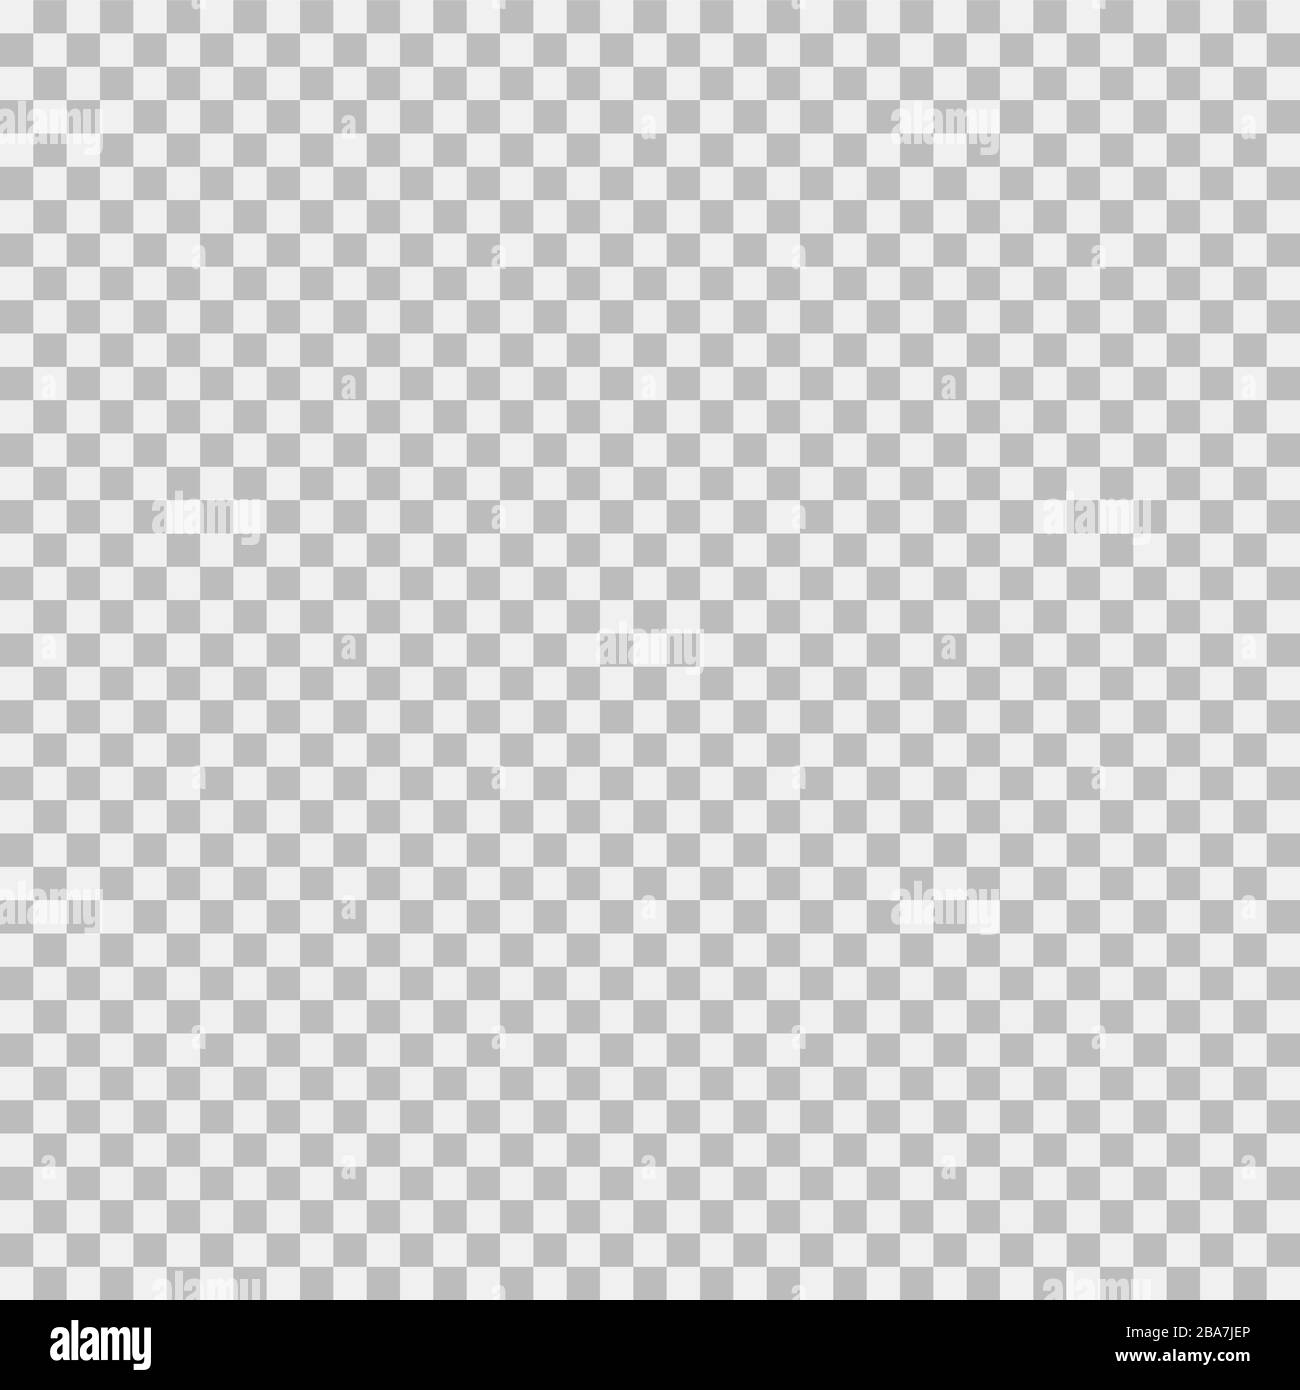 Fondo transparente de patrón de rejilla transparente photoshop psd png.  Elemento vectorial de fondo de cuadros gris y blanco Fotografía de stock -  Alamy